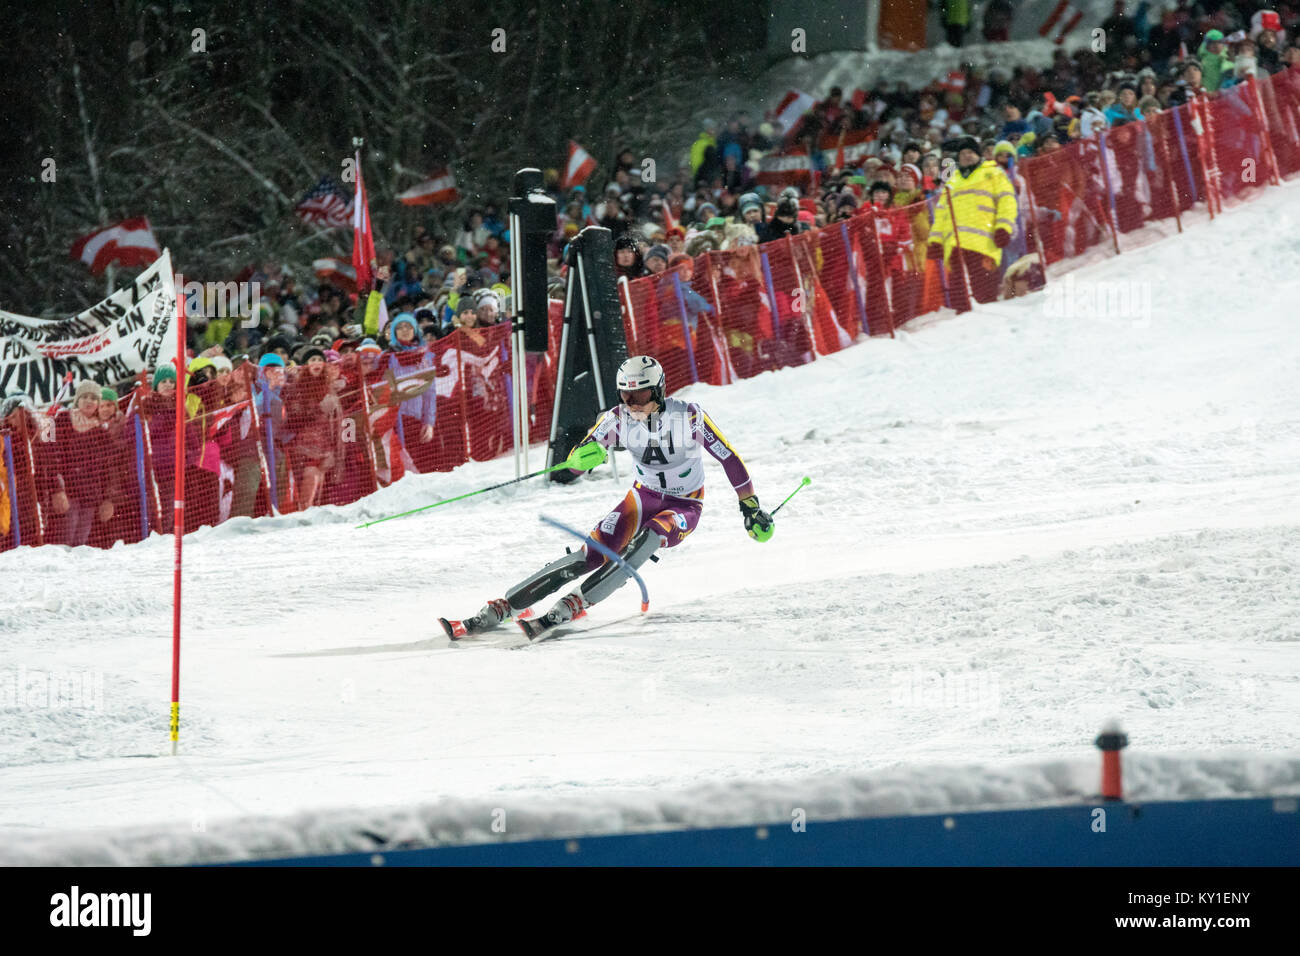 Die norwegische Wm Ski alpin Racer Henrik Kristofferen (1) legt Tempo während der zweite Lauf der Männer Slalom am AUDI FIS Weltcup Rennen in Schladming. Er endete am 7. Photo Credit: Christoph Oberschneider. Stockfoto